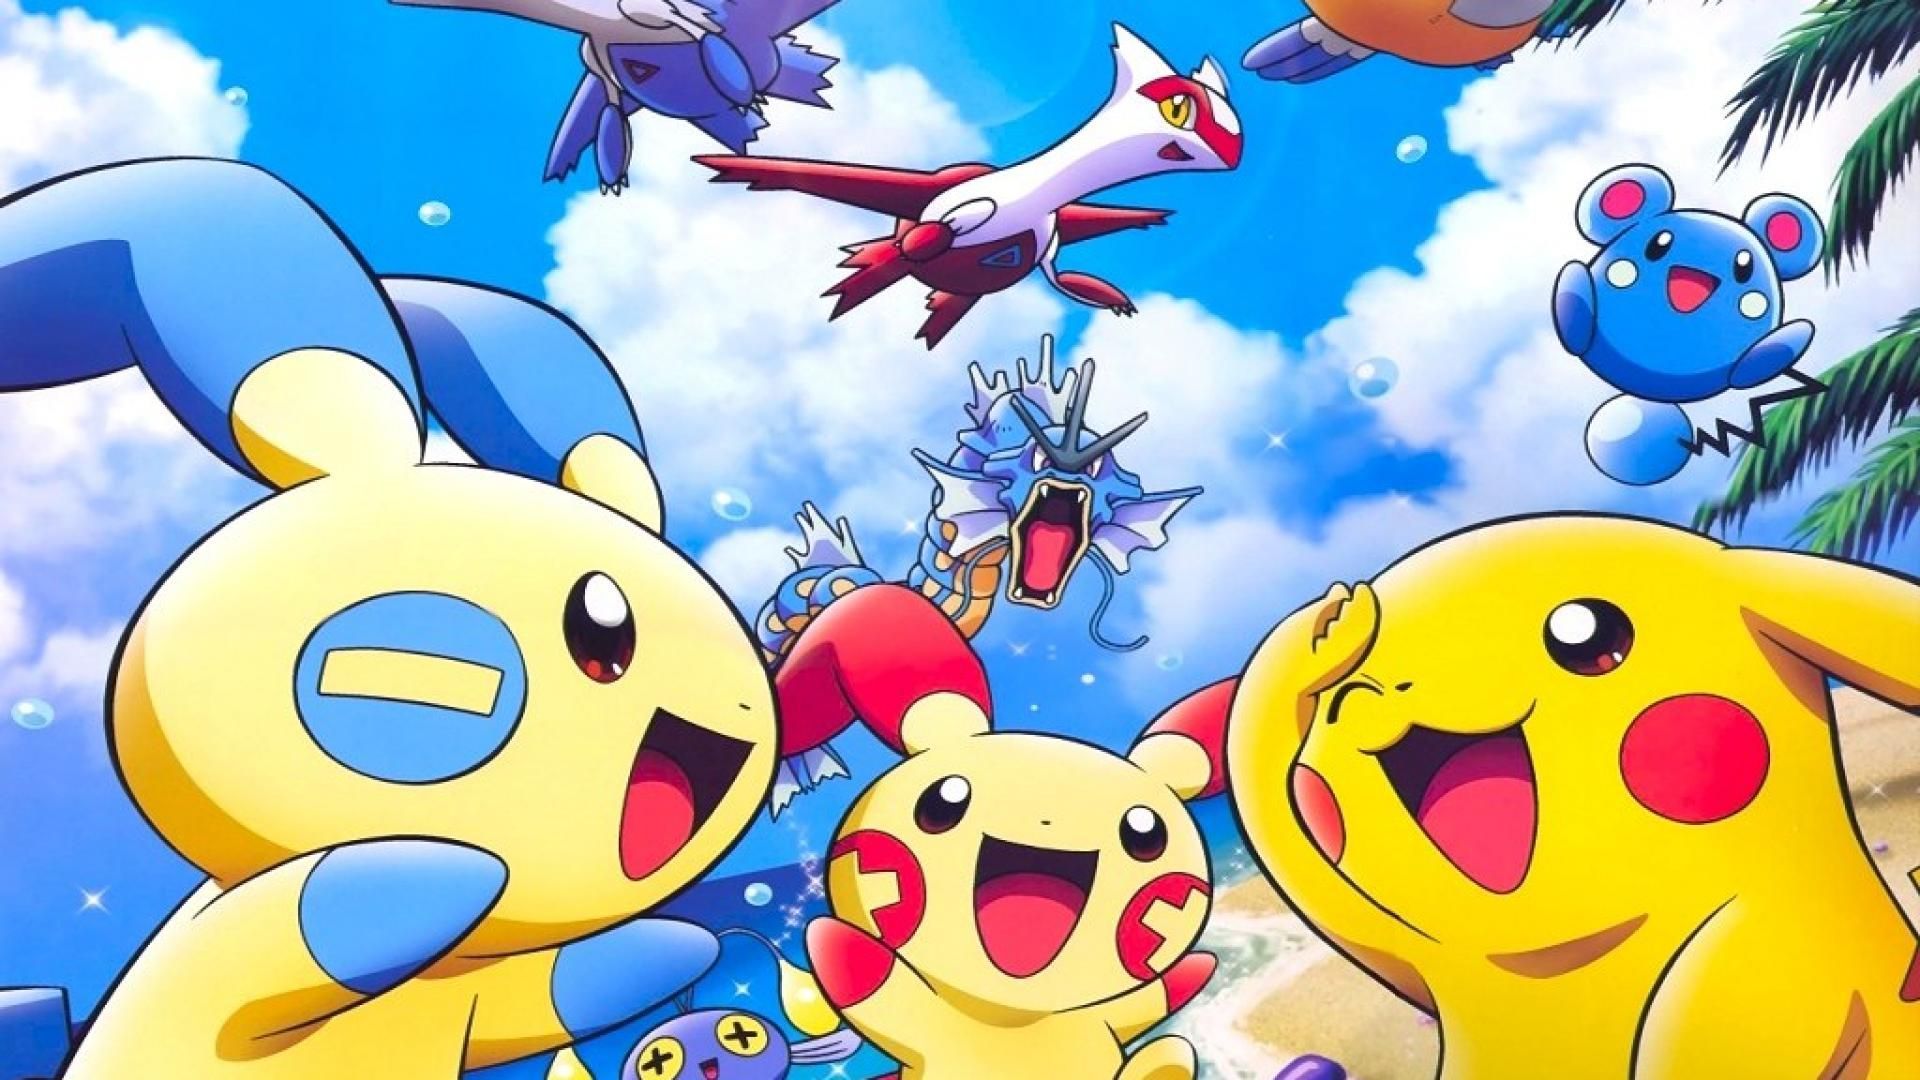 Cute Legendary Pokemon Wallpapers - Top Free Cute Legendary Pokemon